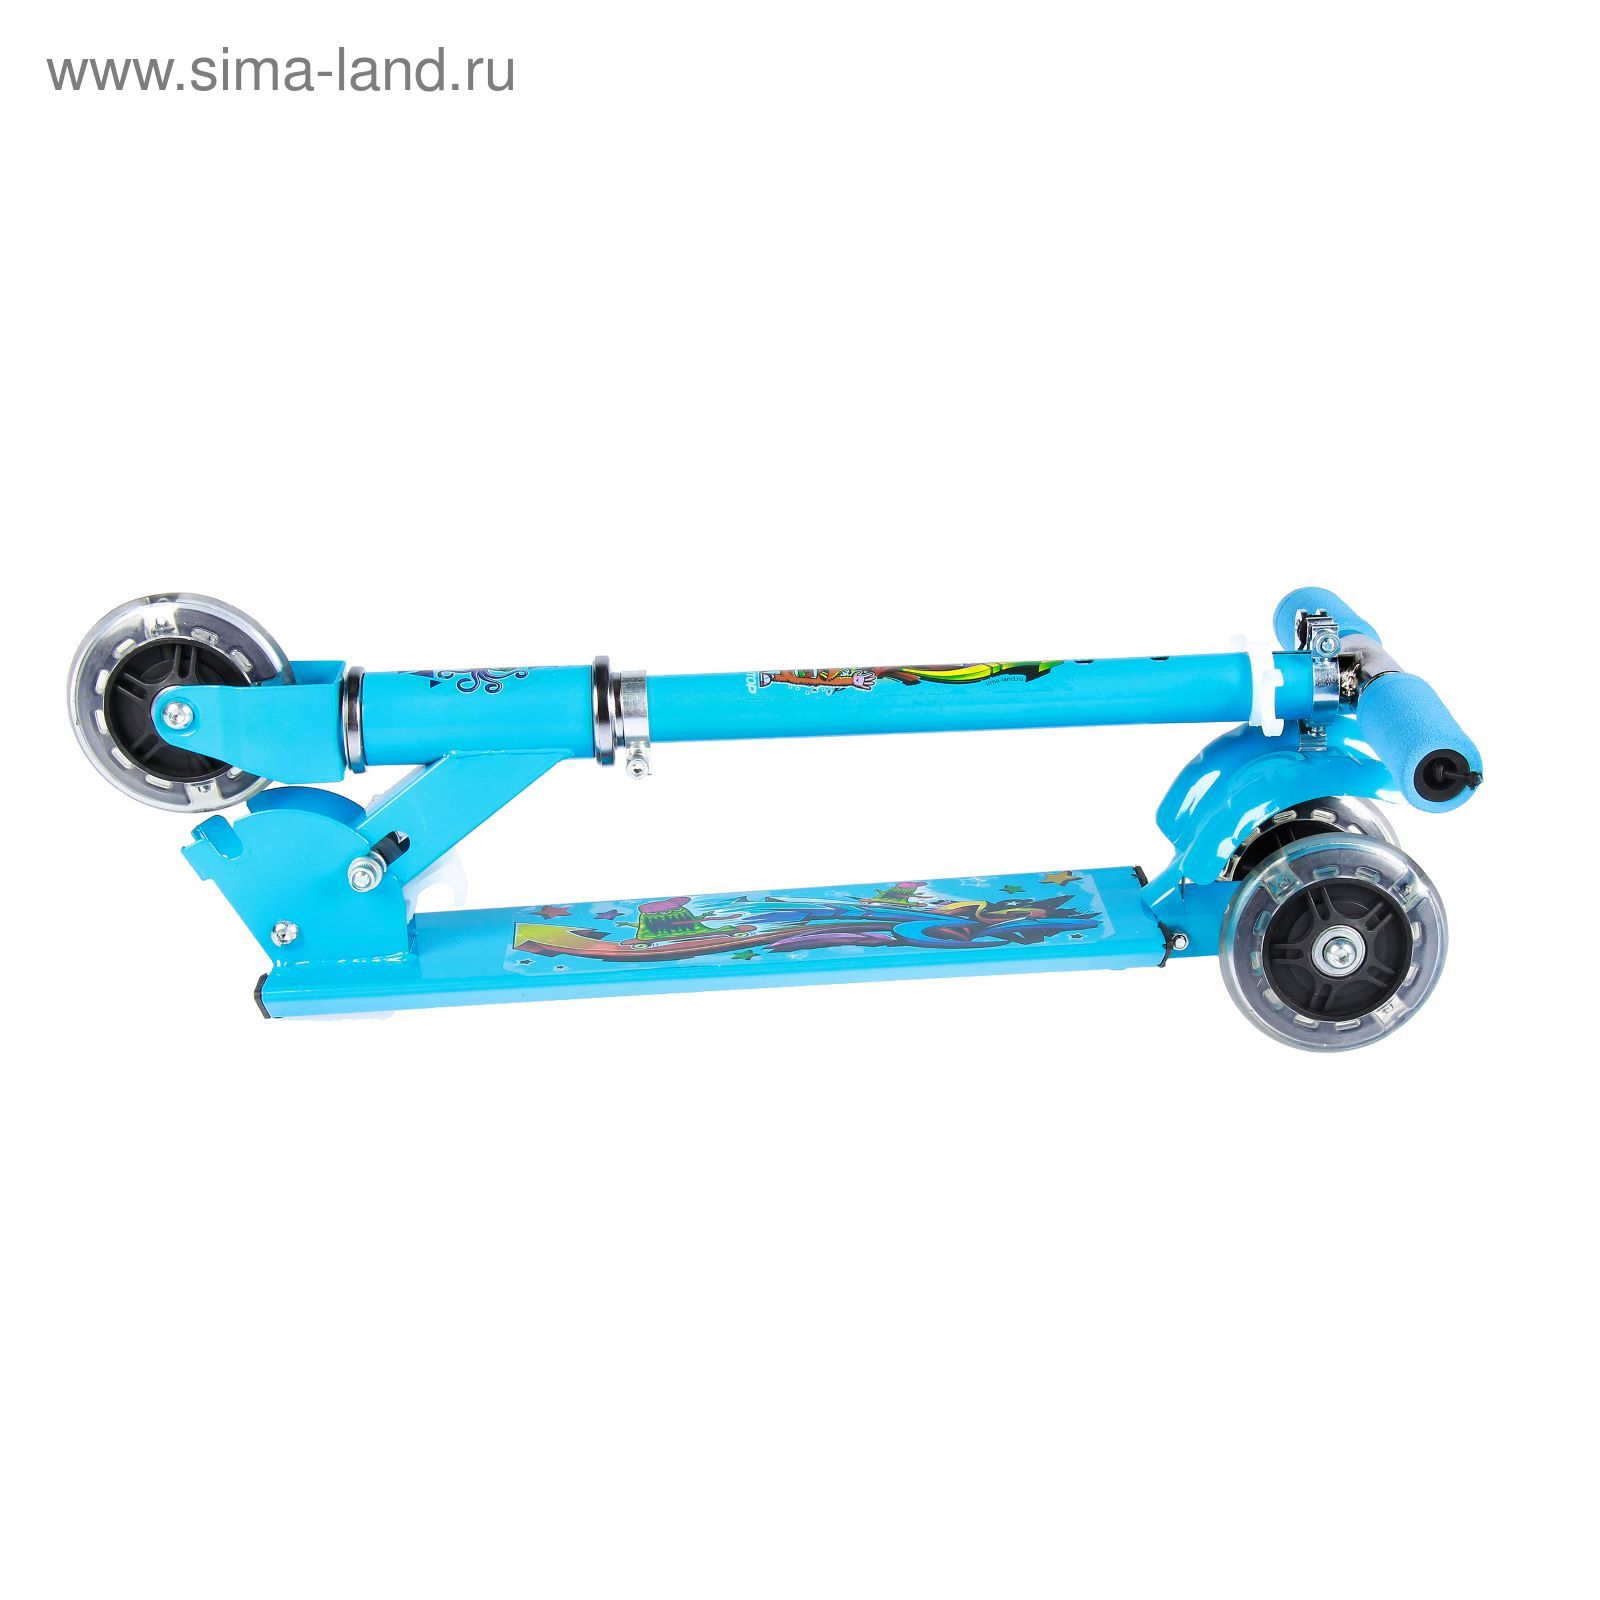 Самокат стальной "Молния" ОТ-508, три колеса PVC d= 100 мм светящиеся, цвет синий